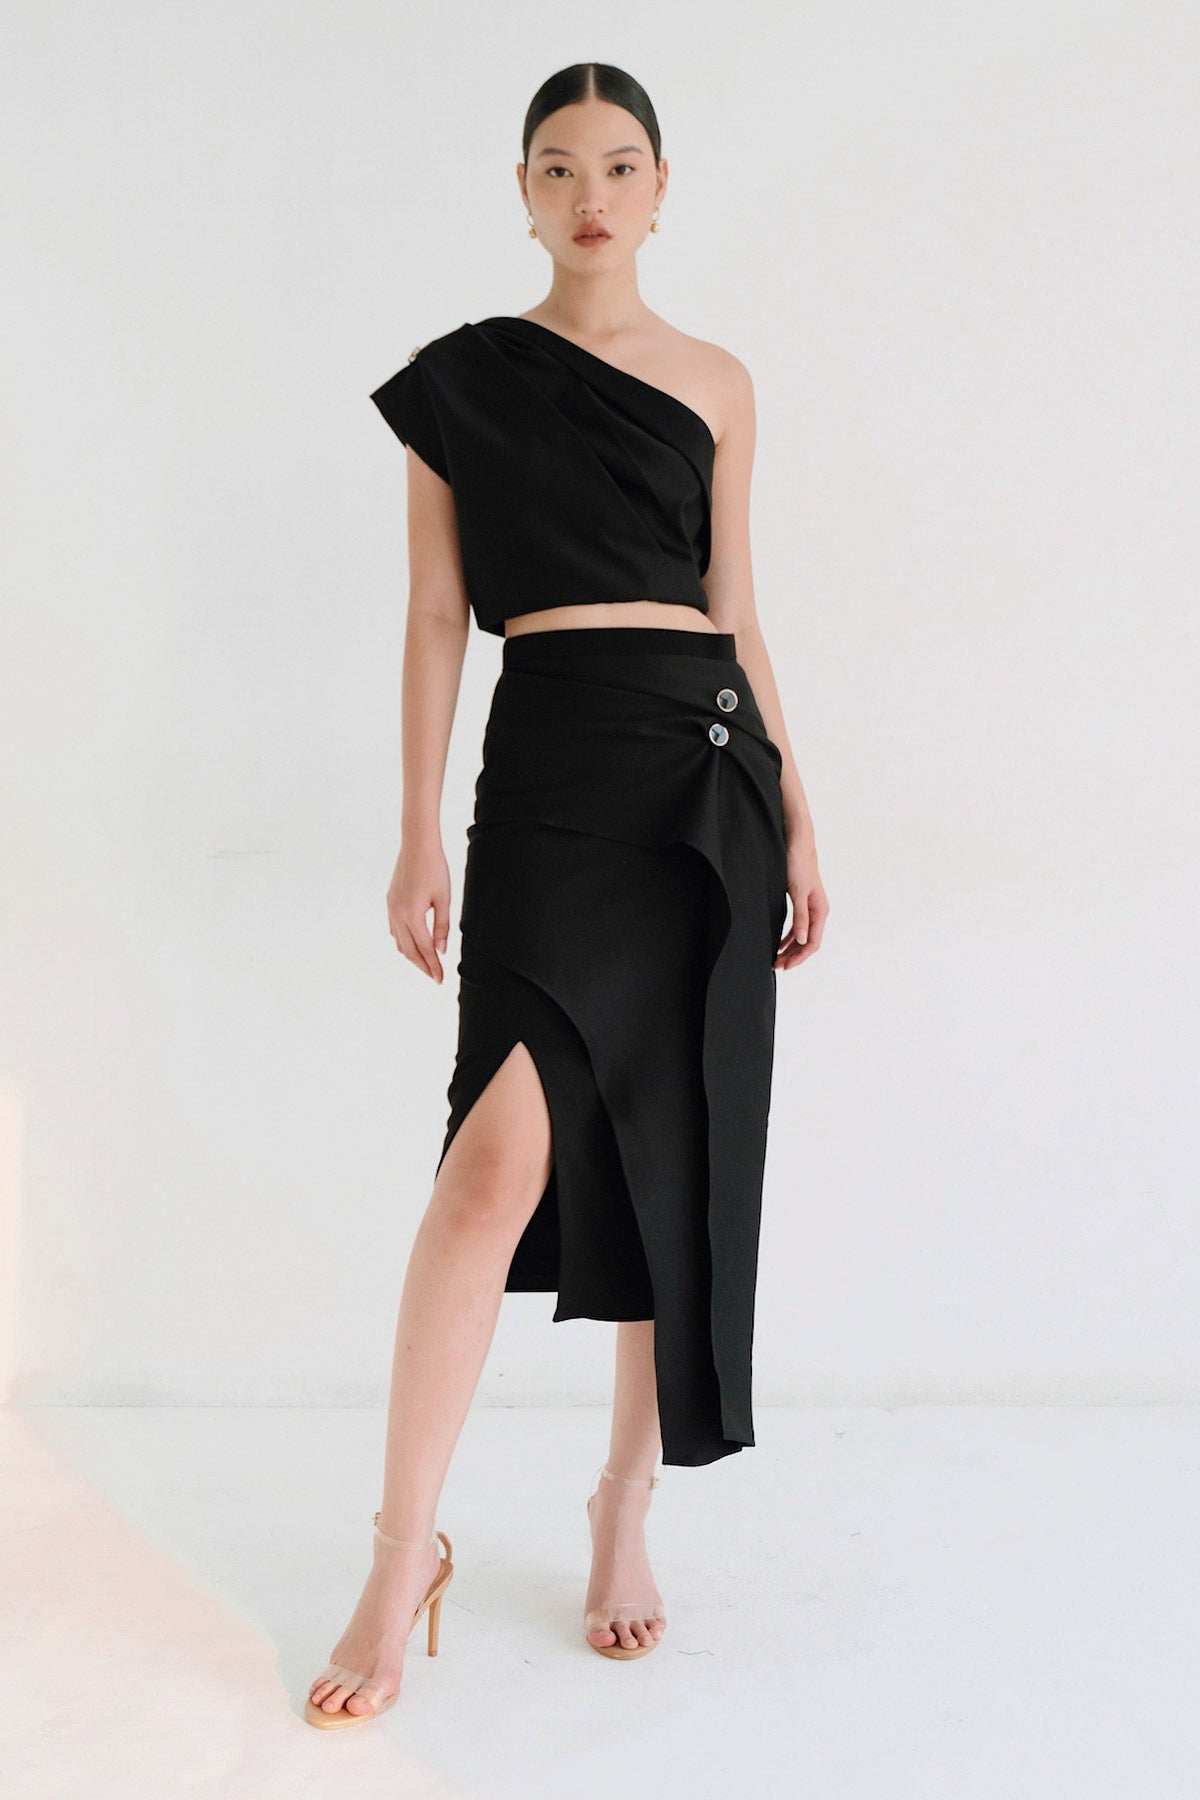 Mira Skirt In Black (1XS LEFT)